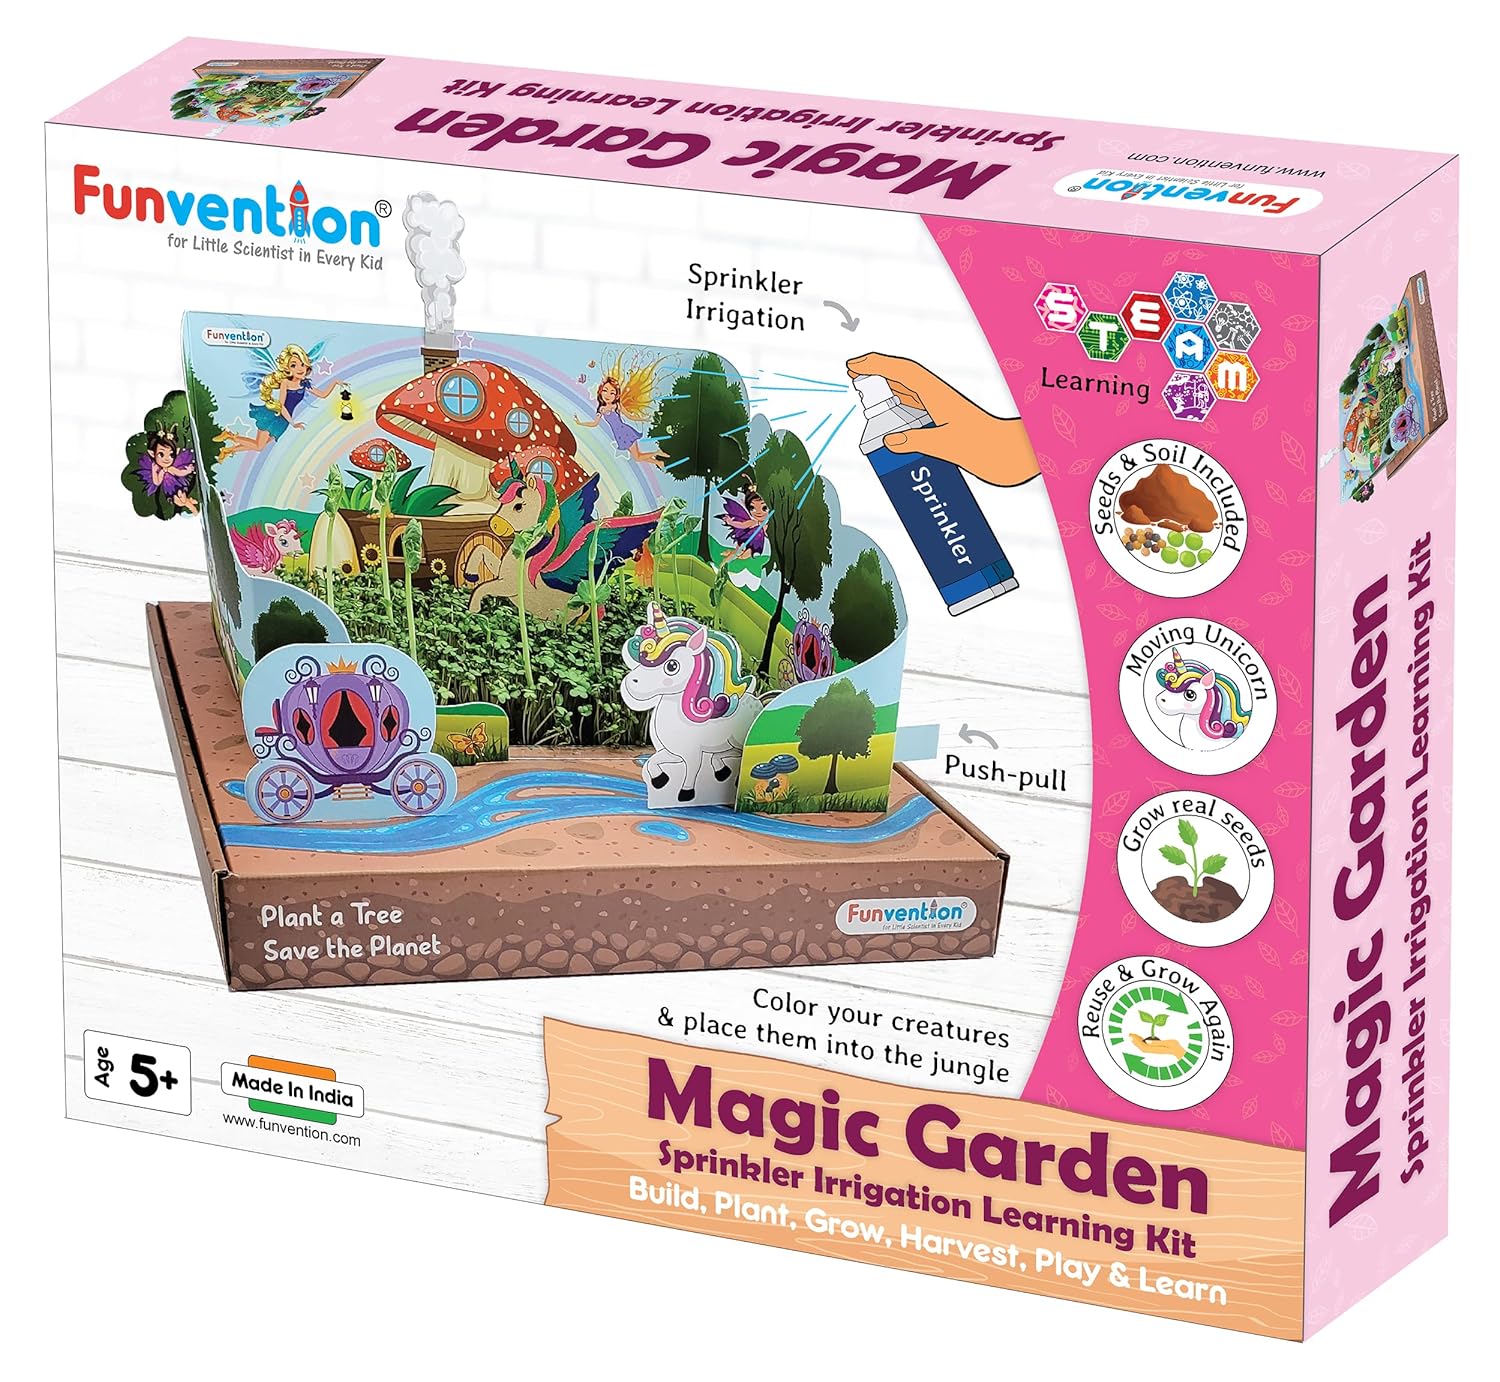 Funvention Magic Garden Sprinkler Irrigation DIY STEM Learning Kit for Kids